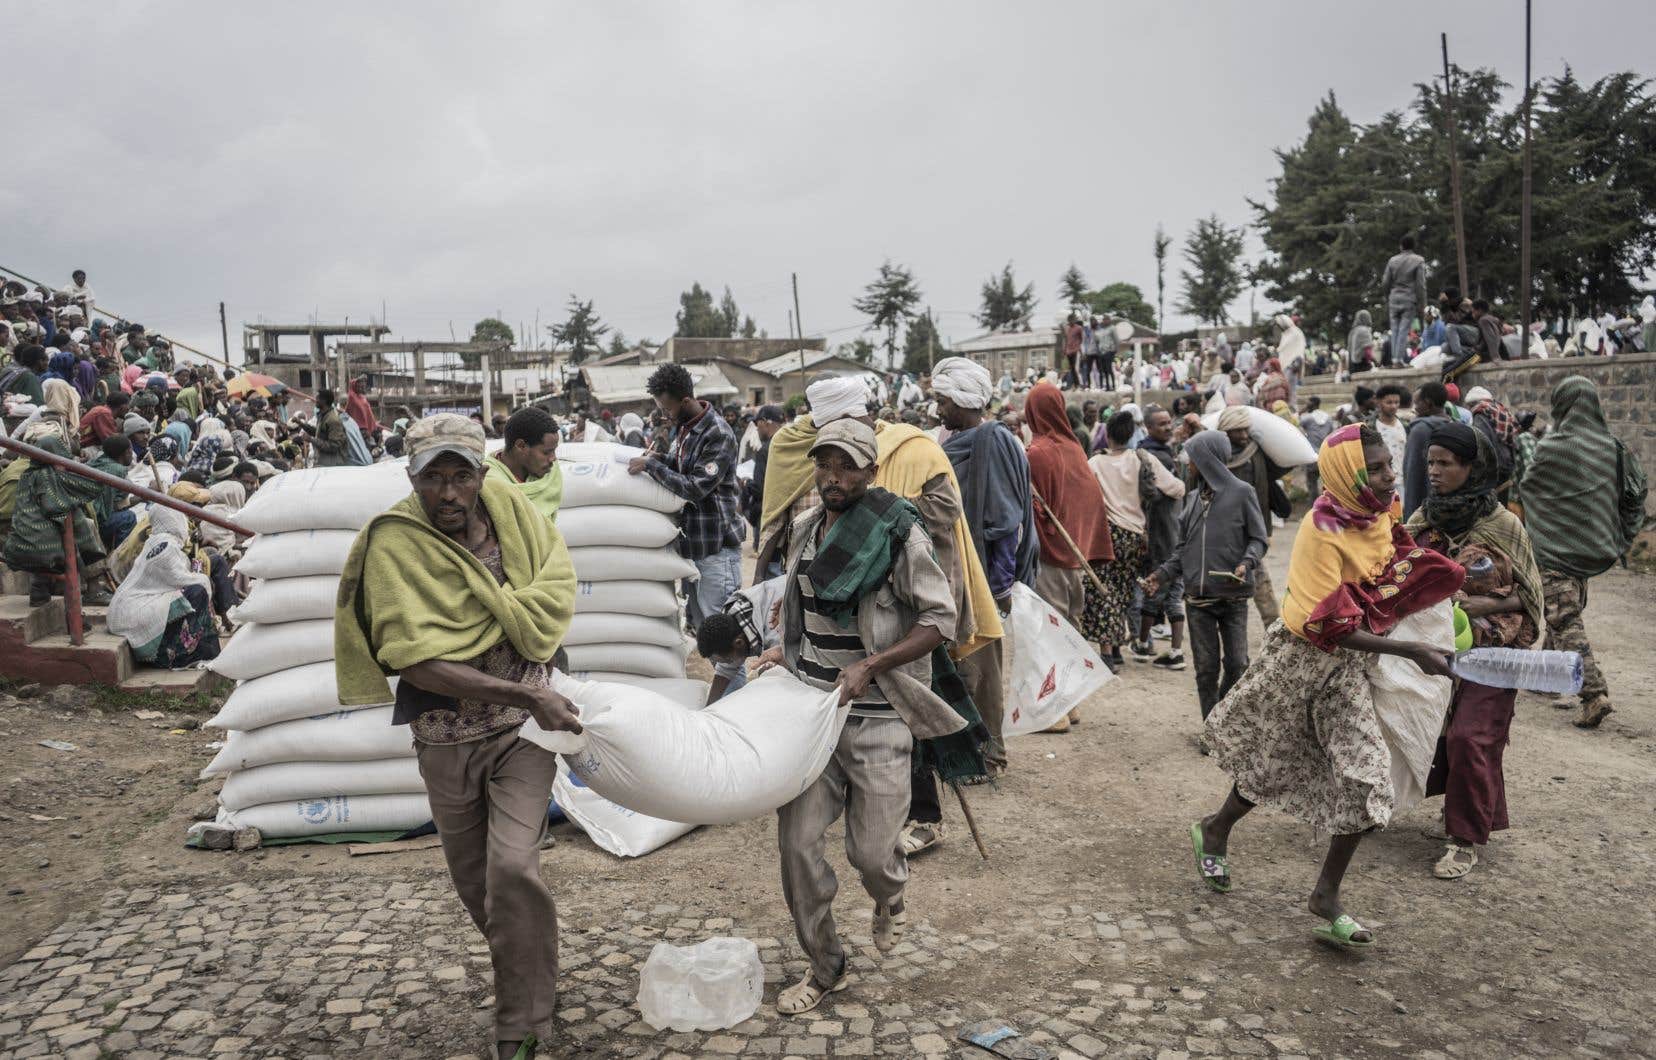 Lire la suite à propos de l’article Éthiopie : plus de 50.000 personnes déplacées par des combats dans le nord